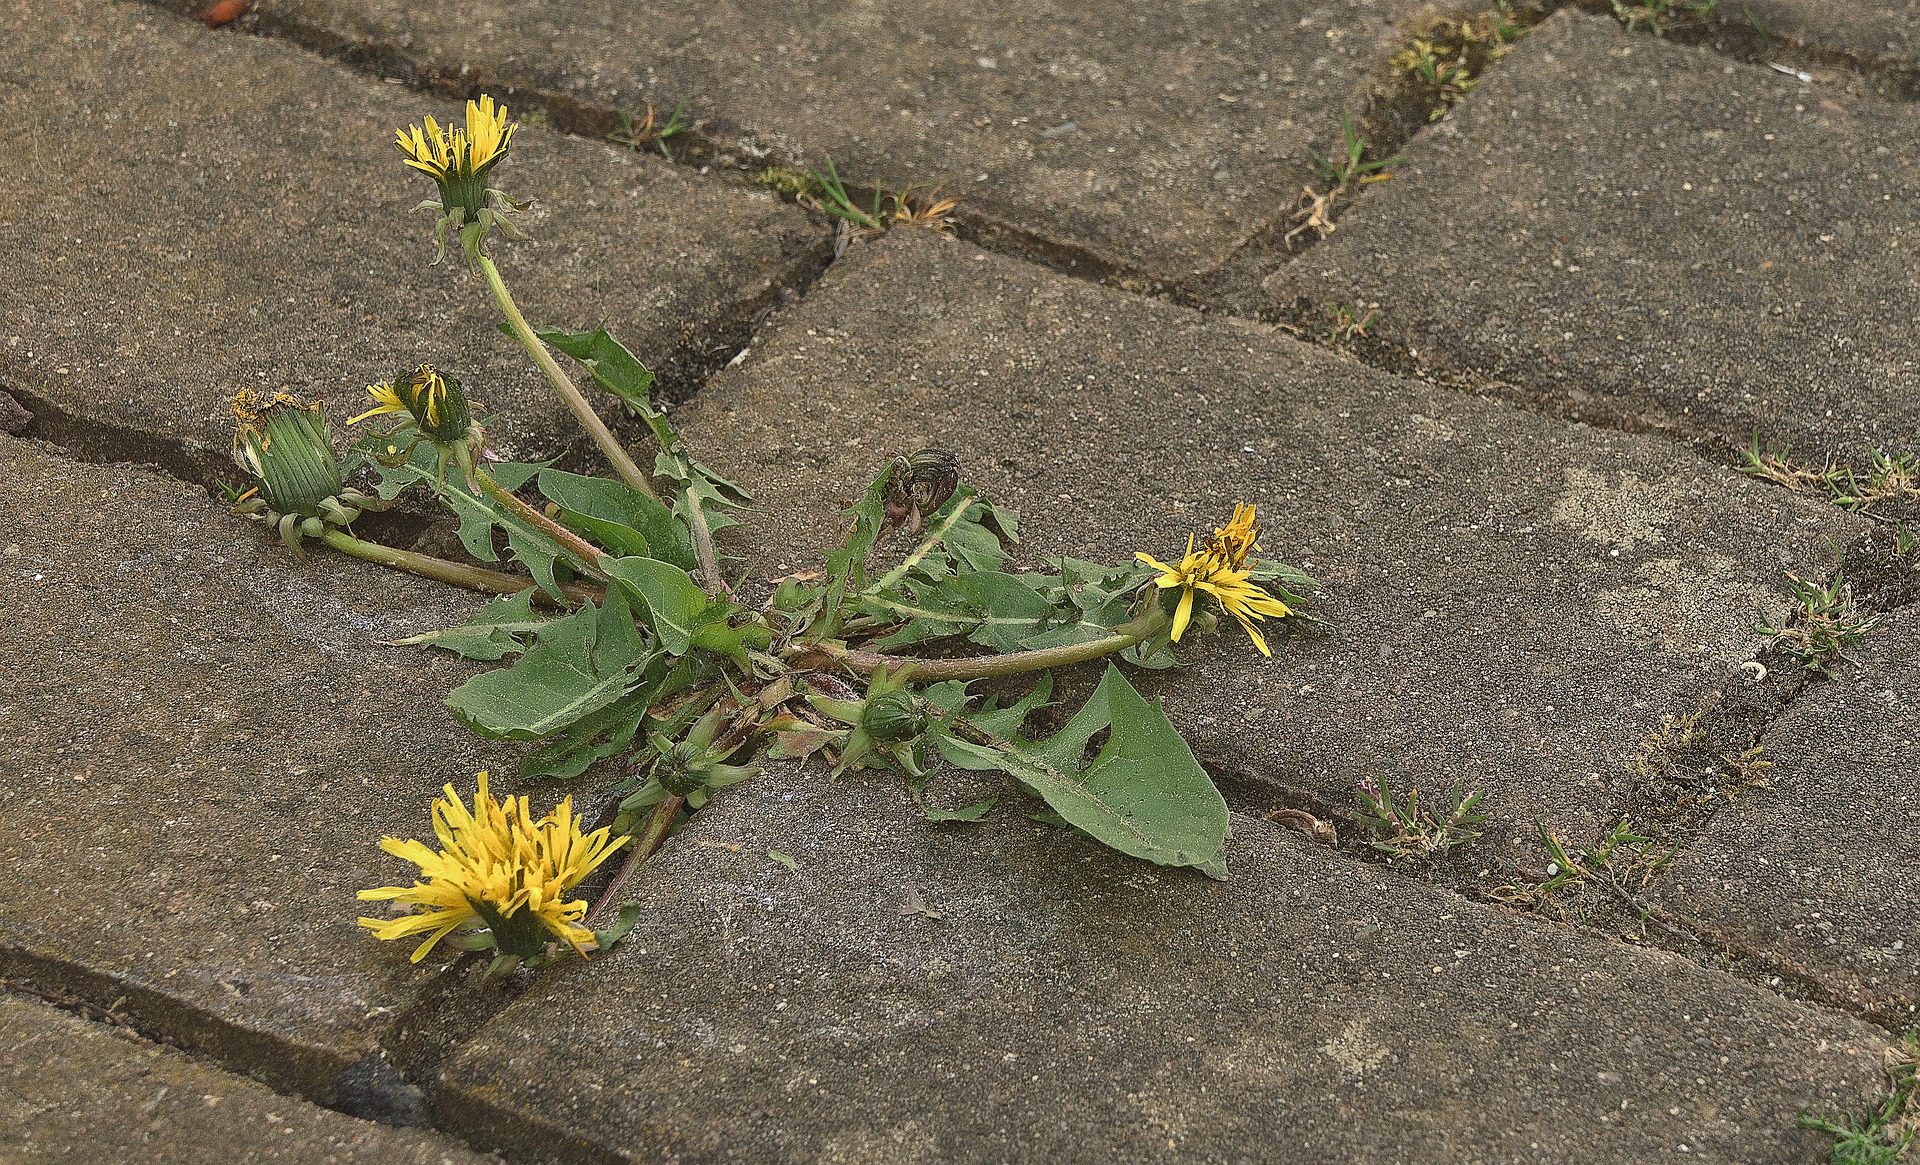 Planta con flor color amarillo y hojas verdes un poco marchitas saliendo del pavimento.